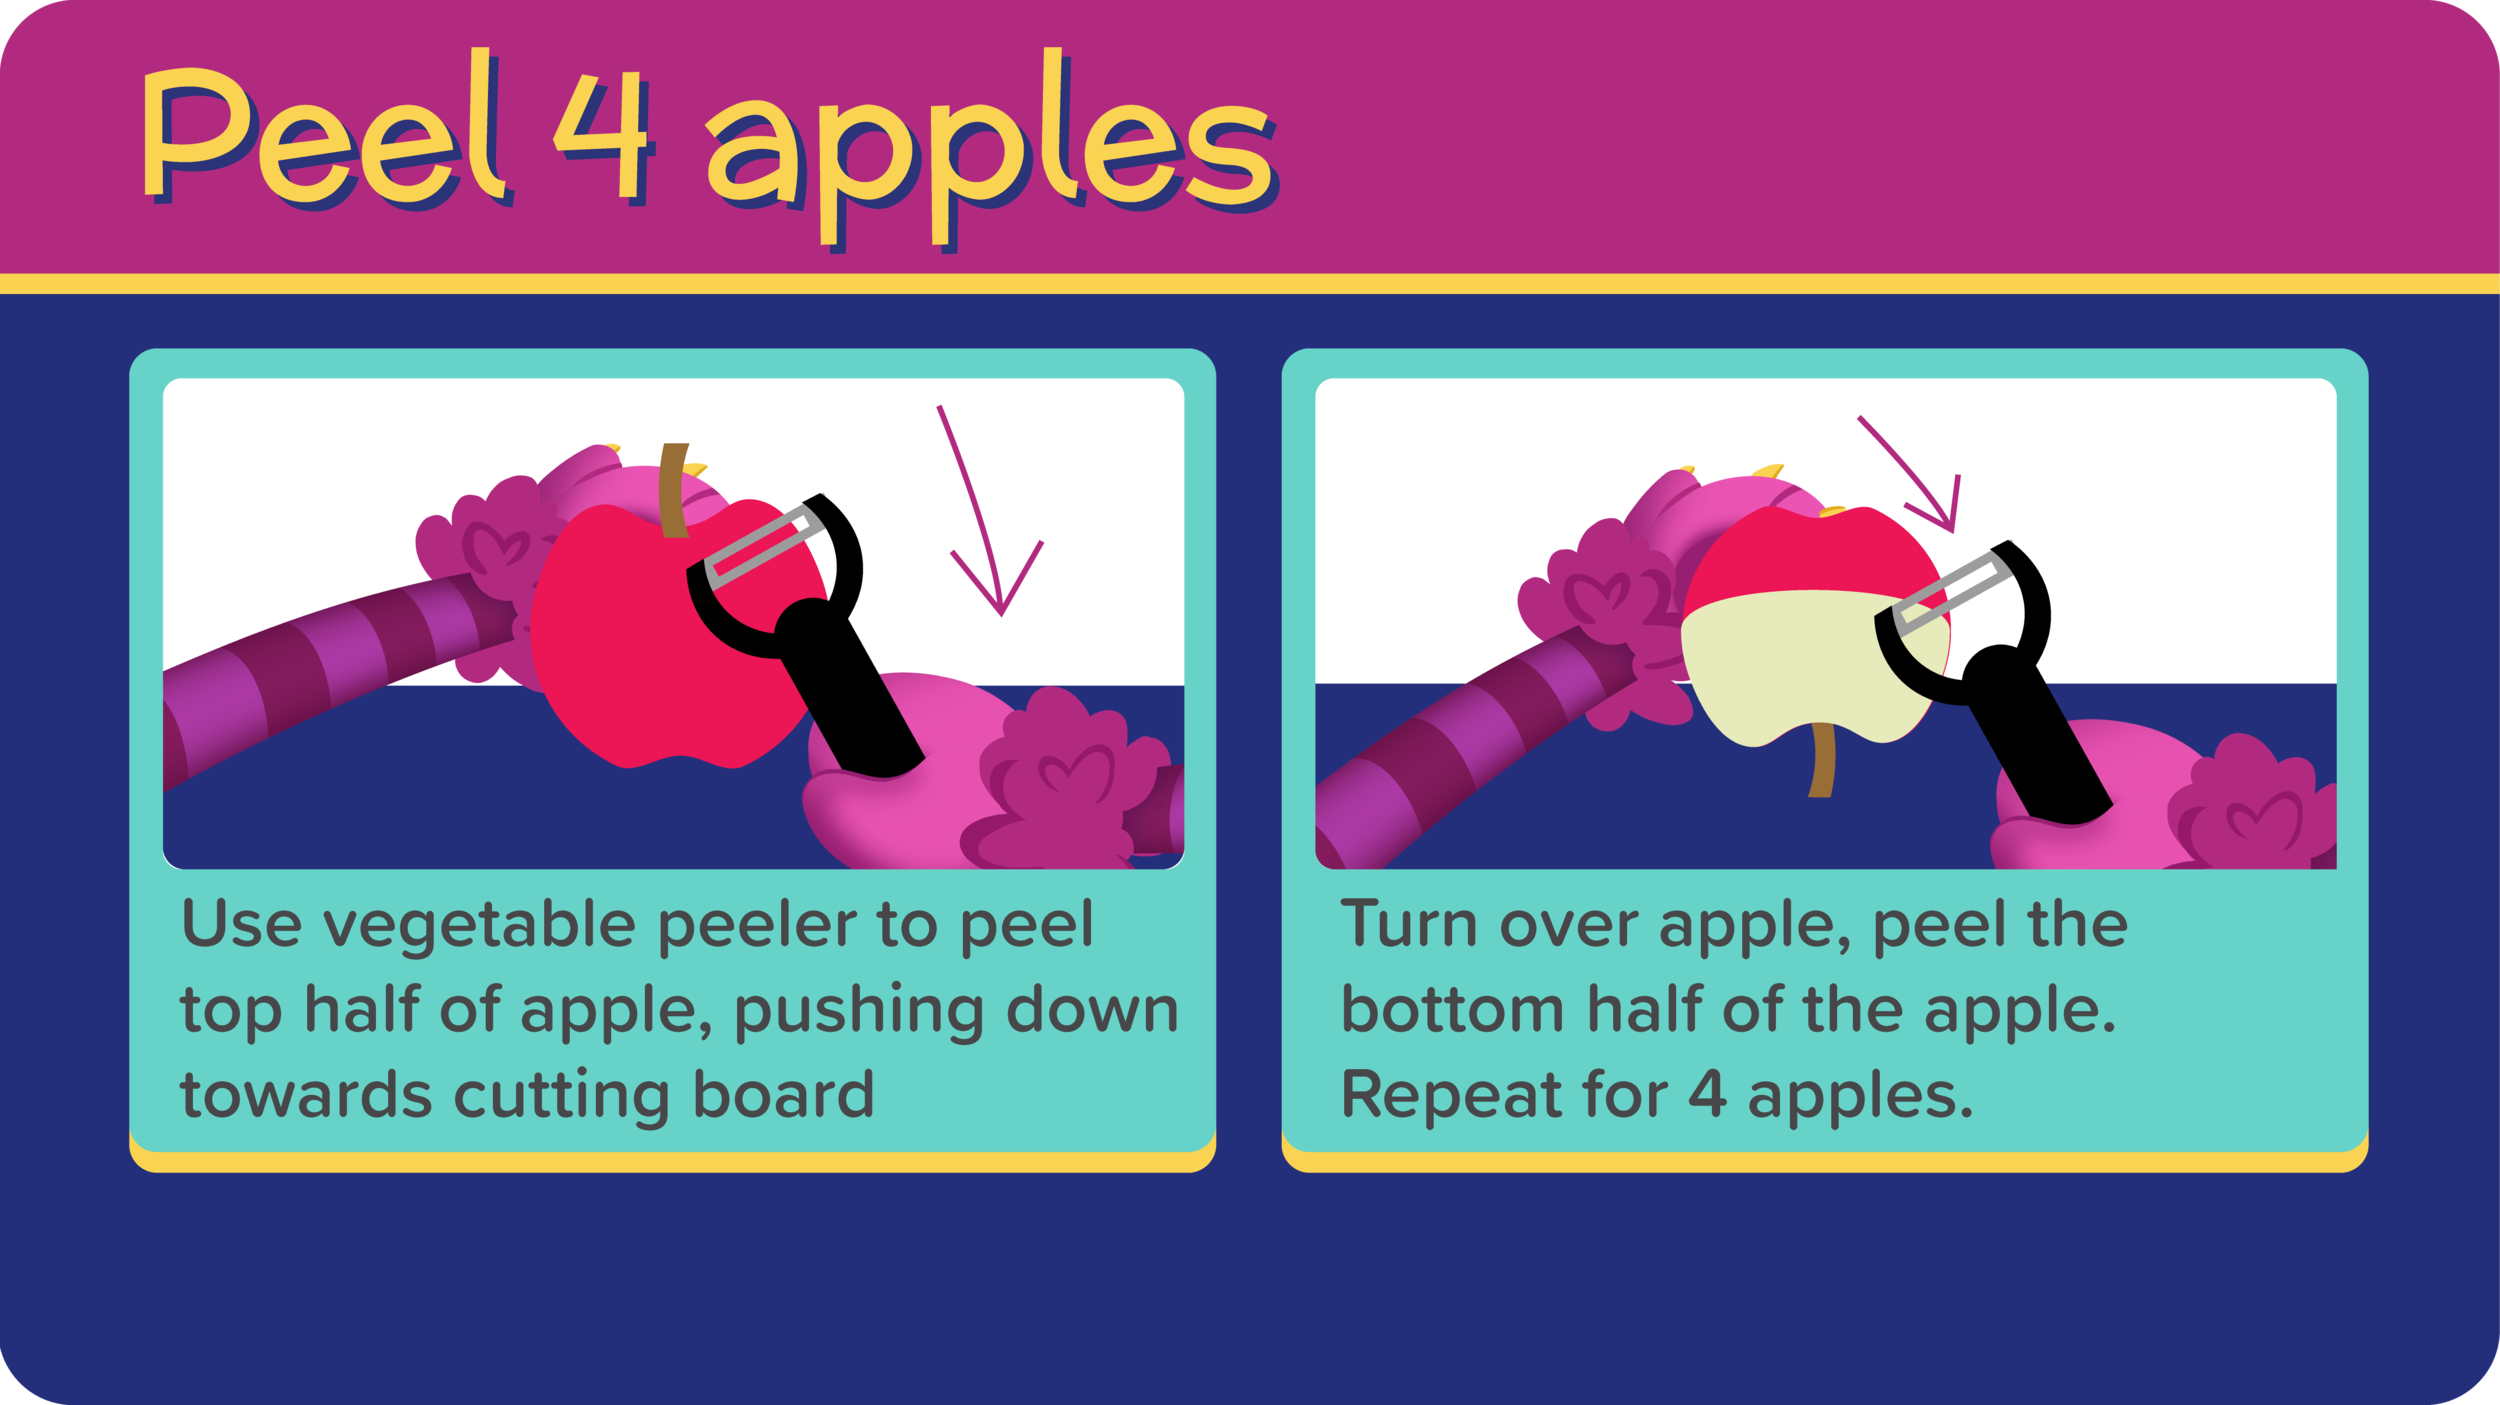 07_AppleSauce_Peel Apples-01.png